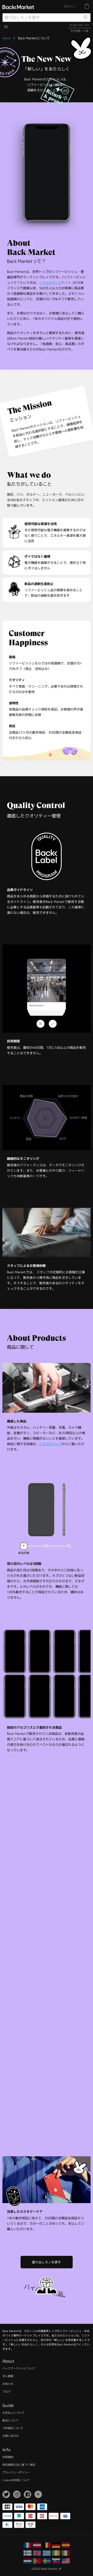 キャプチャ画面 会社名:Back Market Japan株式会社プロジェクト名:Back Market 画面名:アバウト・紹介 デバイス名:SPカテゴリ:家電・日用品・インテリア・雑貨タグ:アバウト・紹介,SP